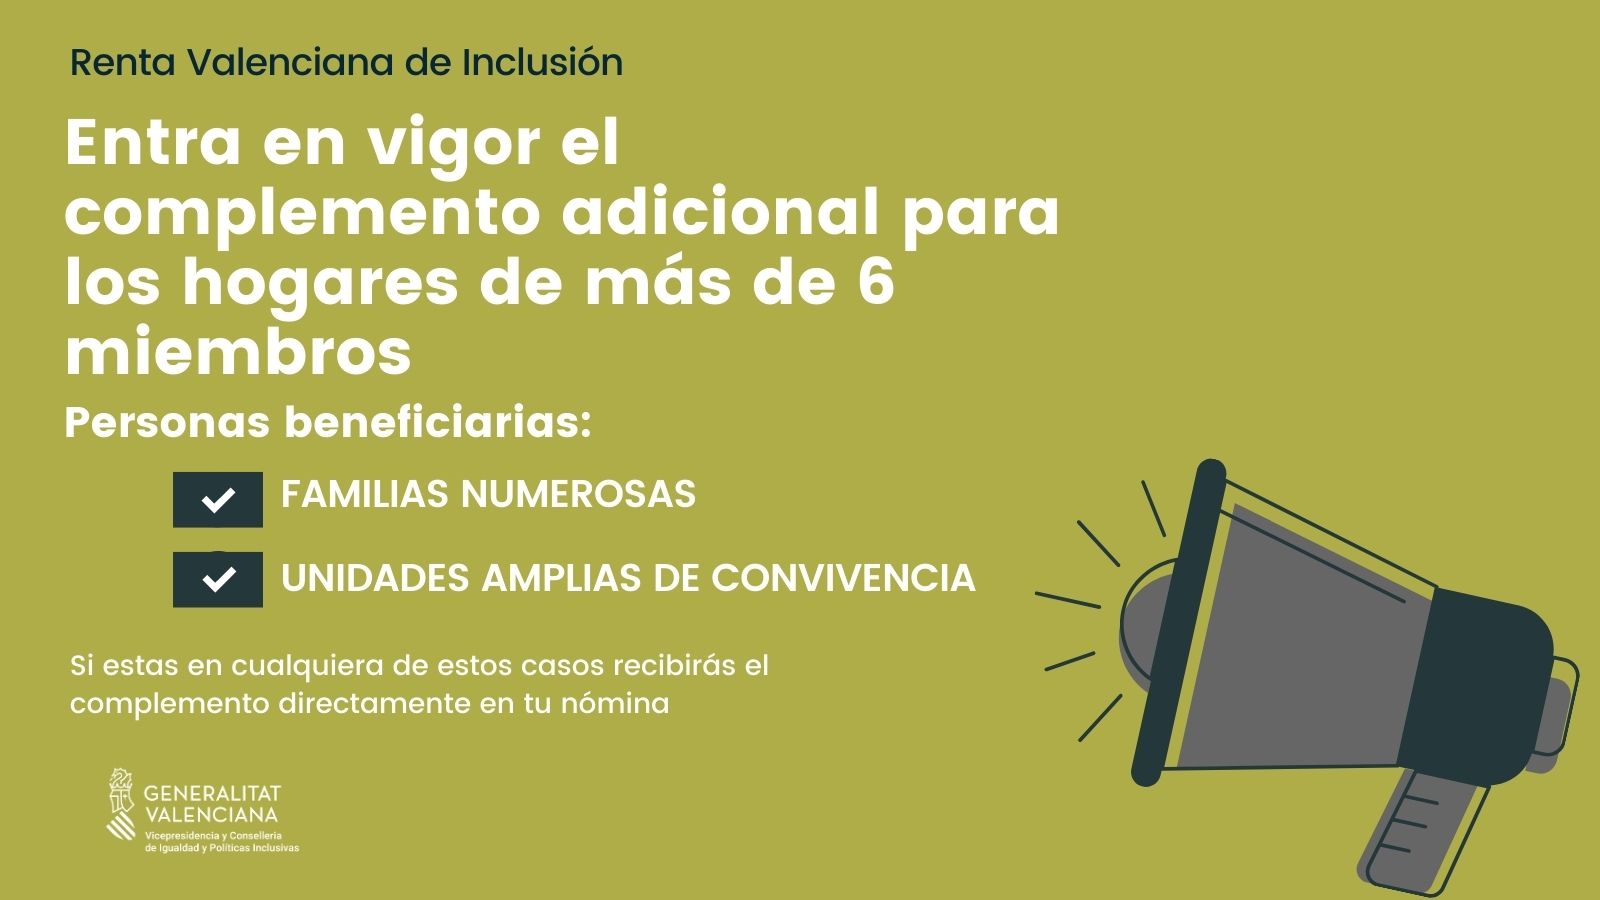 Entra en vigor el complemento adicional de la renta valenciana de inclusión para los hogares de más de seis miembros